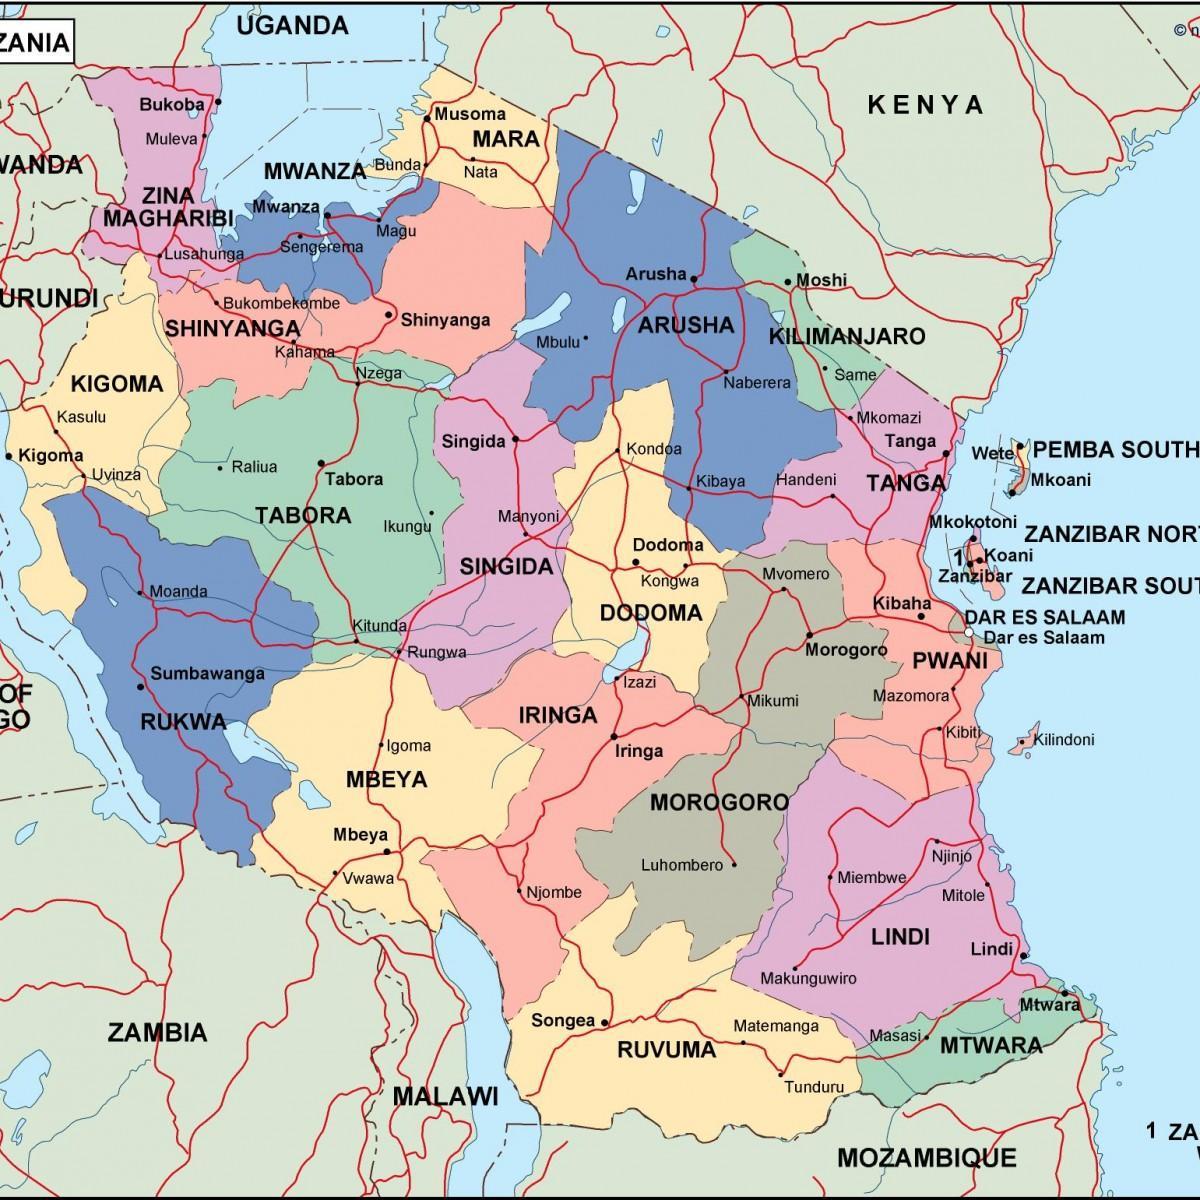 नक्शा तंजानिया के राजनीतिक